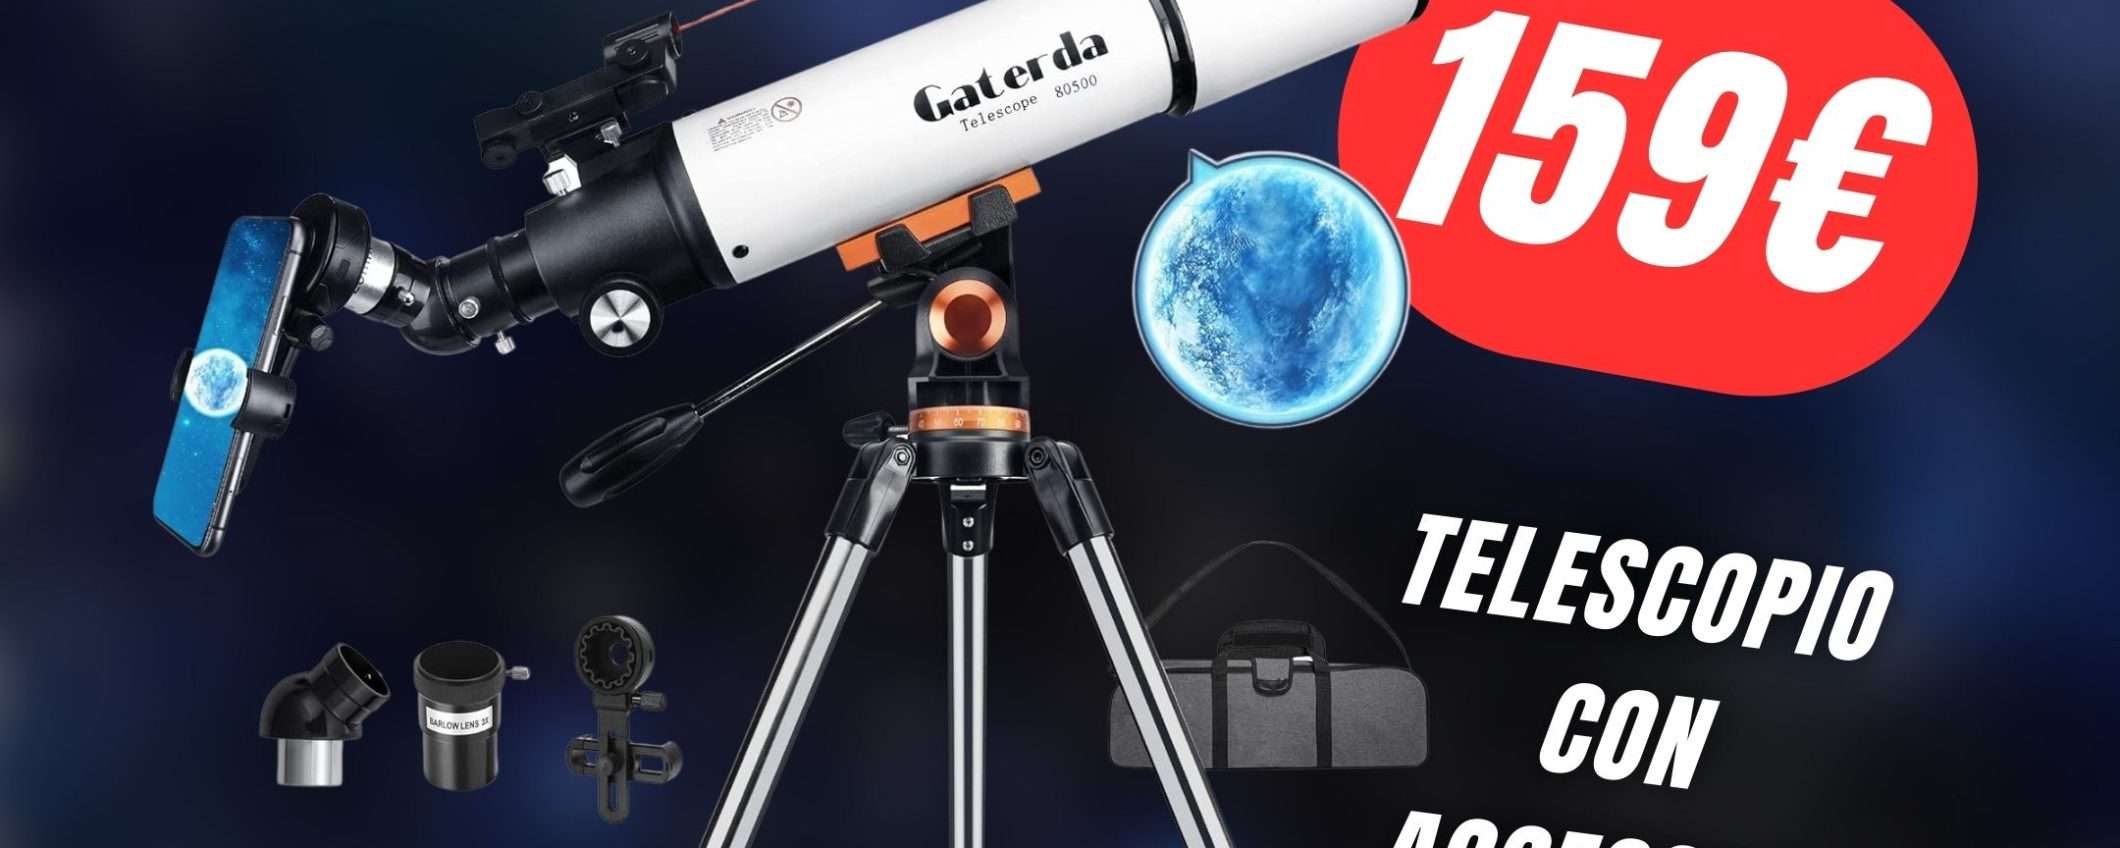 Osserva lo spazio dalla tua cameretta con il Telescopio Astronomico a soli 159€!